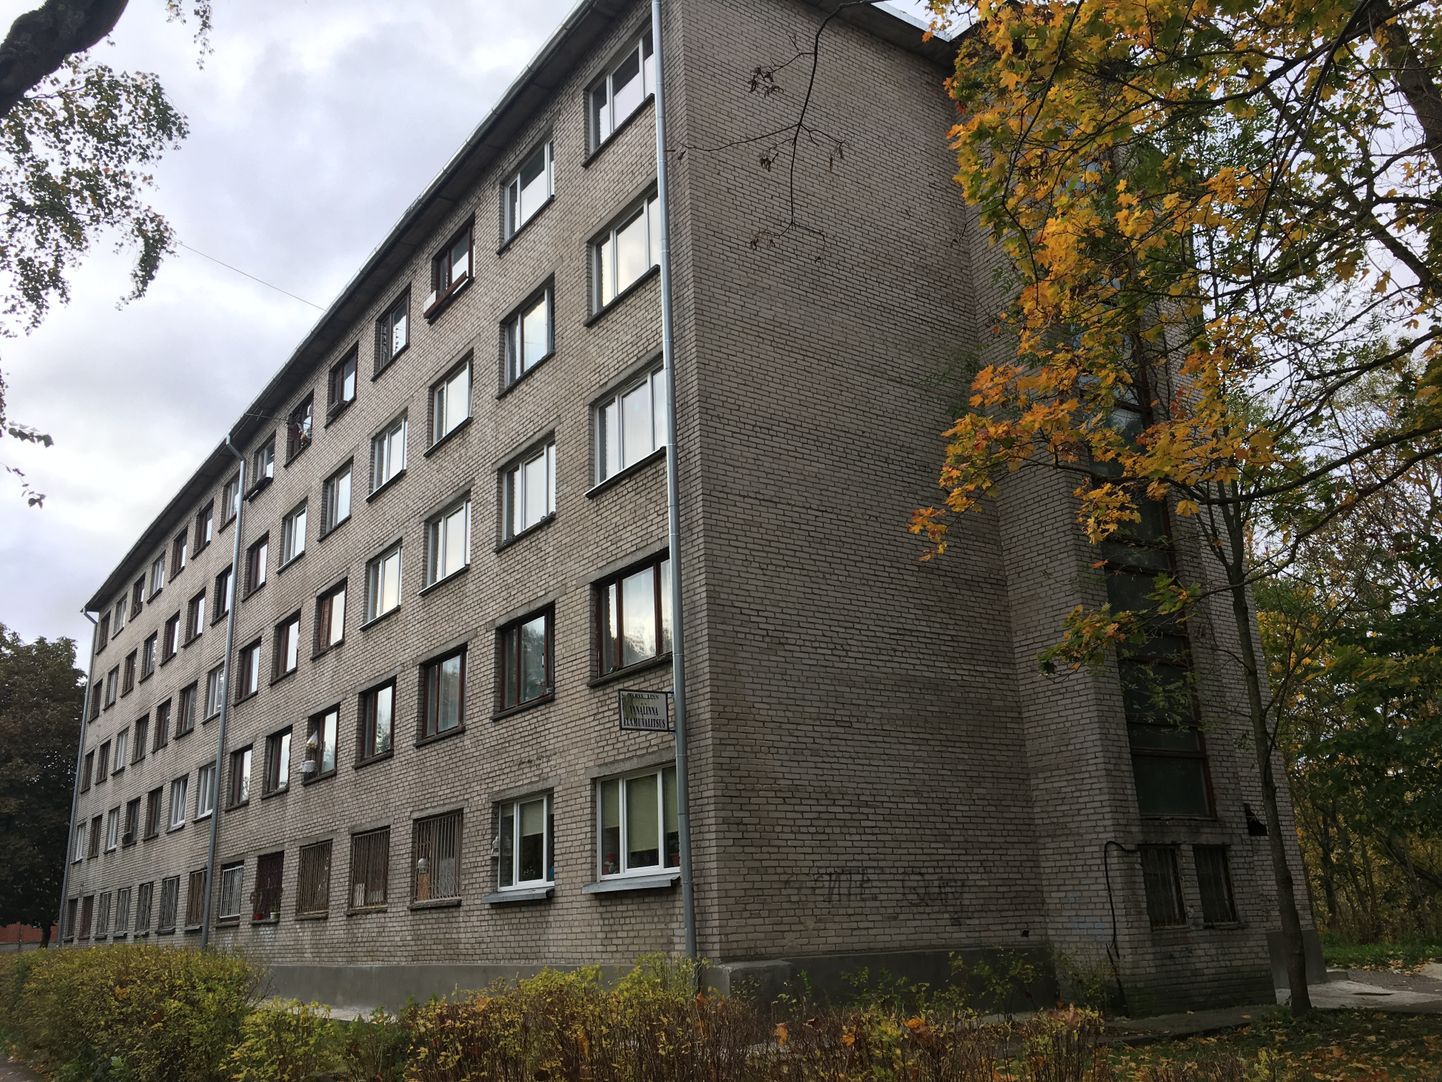 Здание нарвского общежития по ул.Вестервалли, 17, построенное в 1963 году.